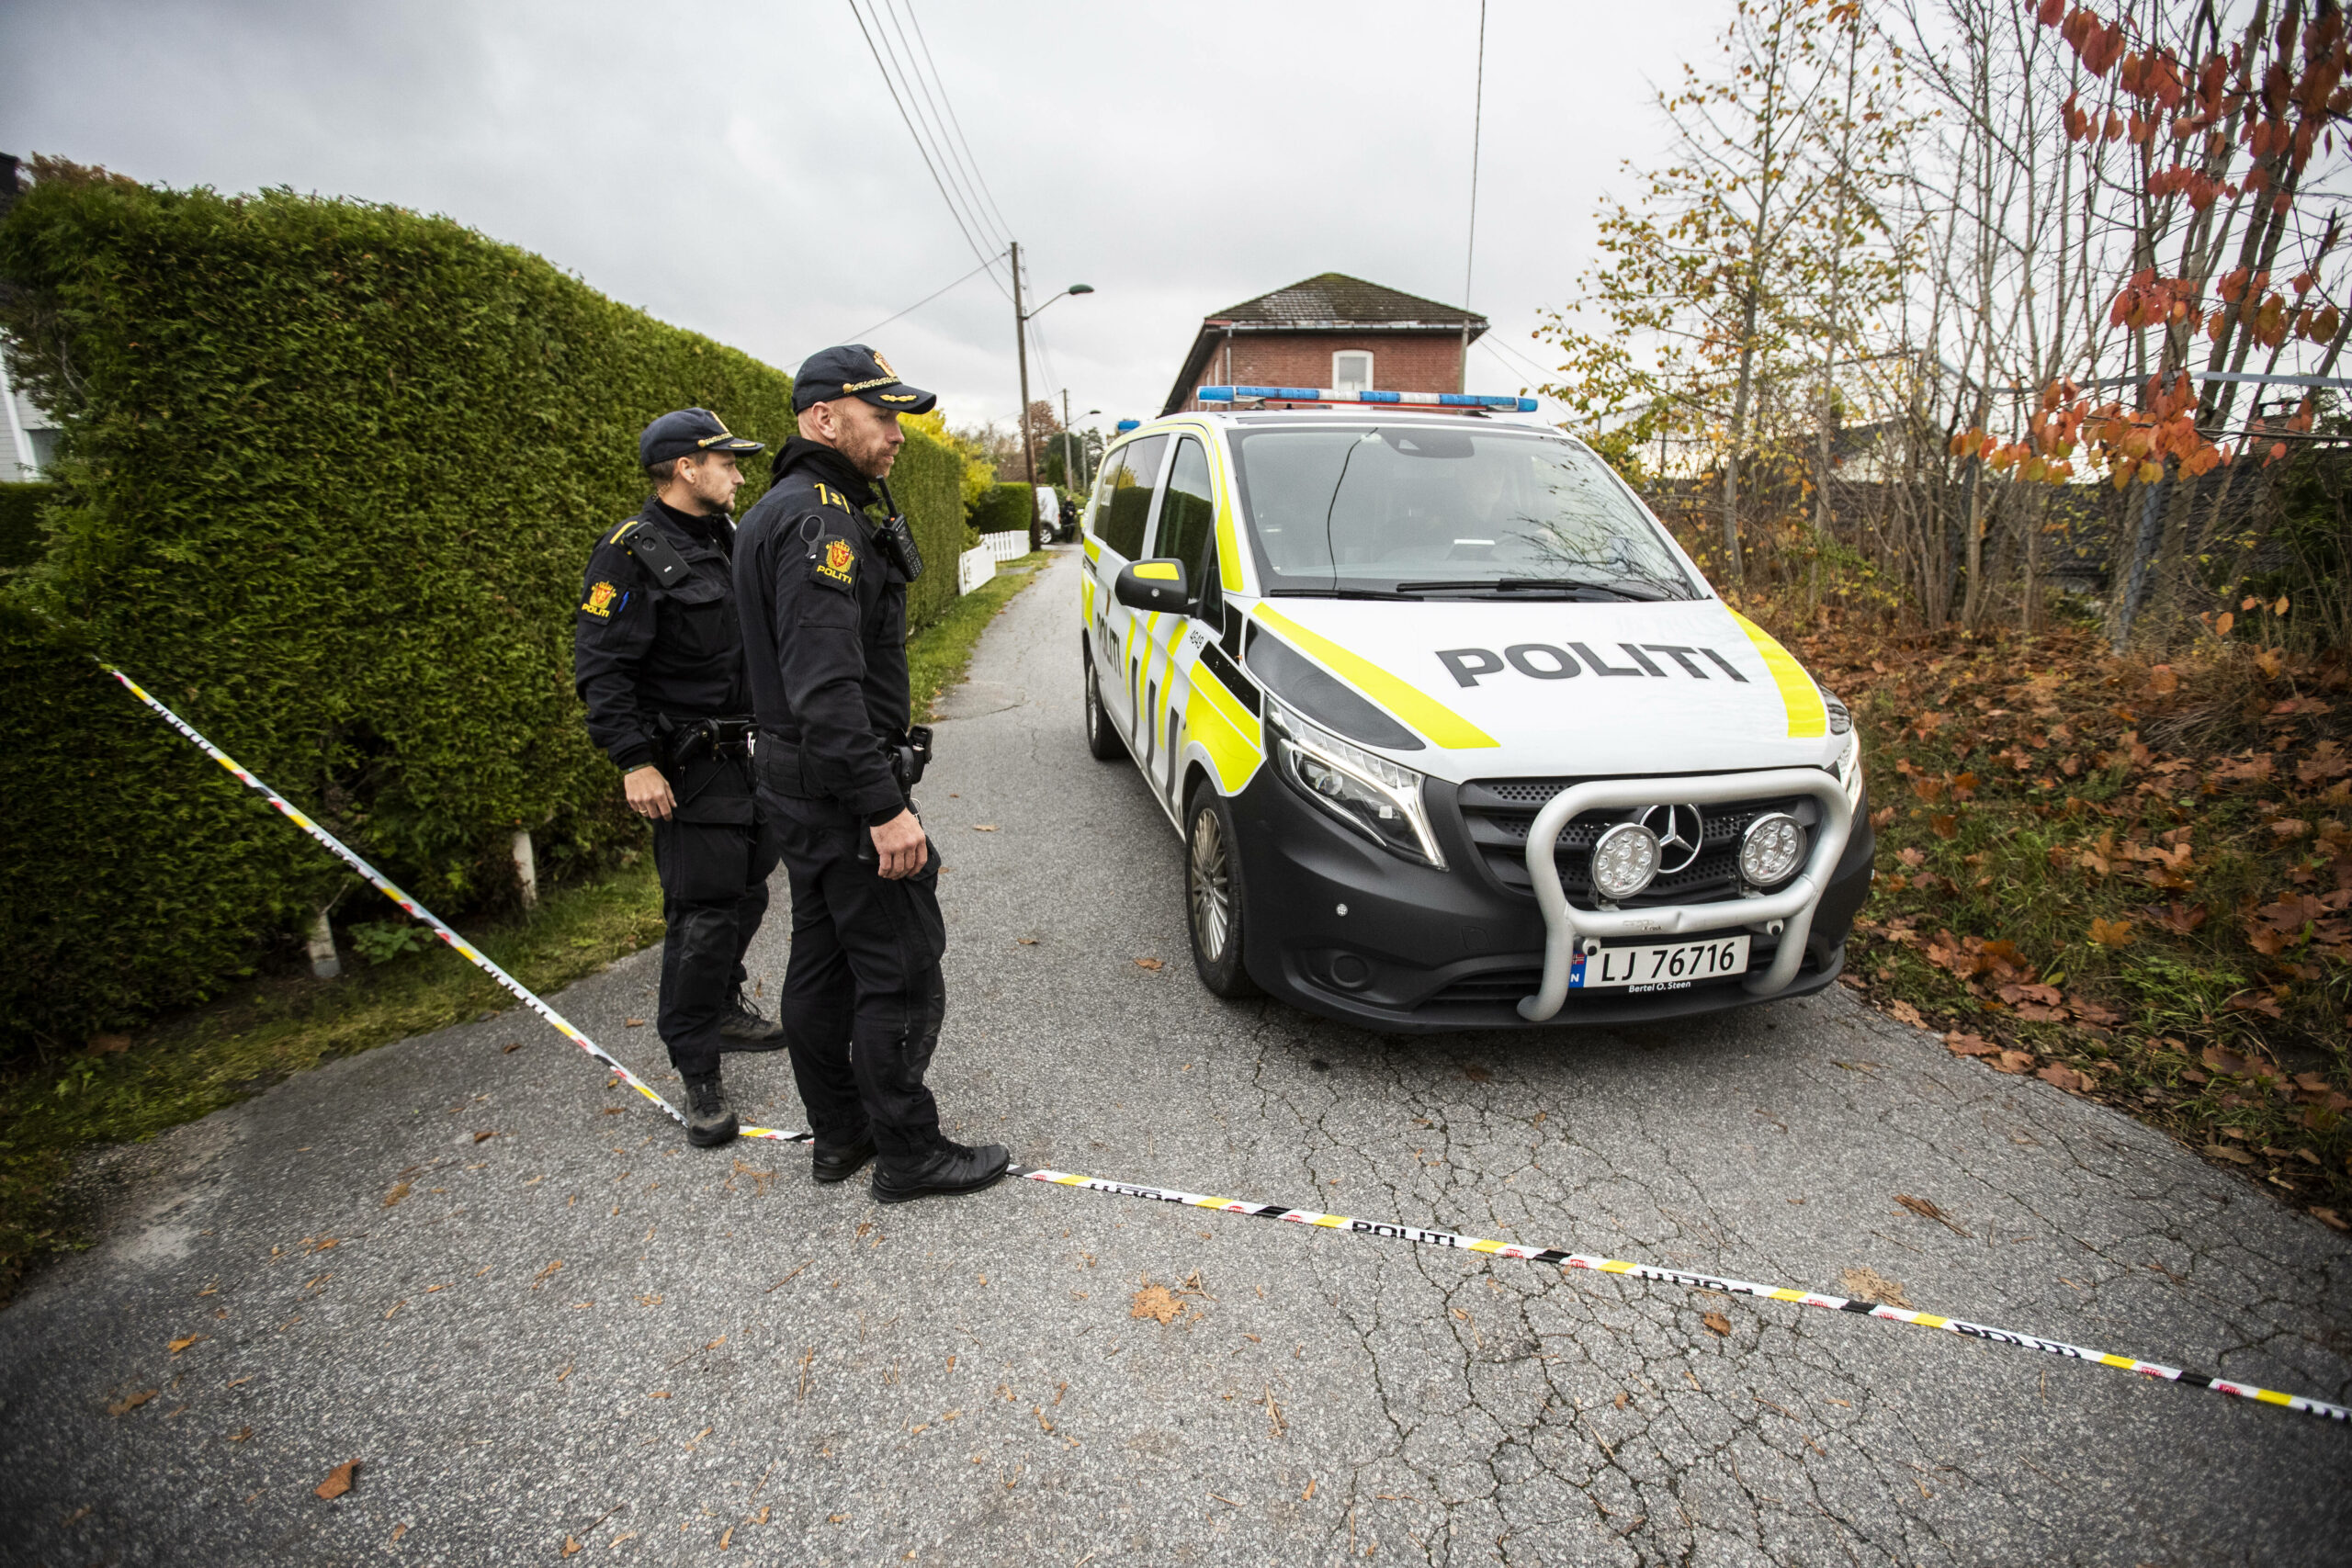 Polizei in Norwegen